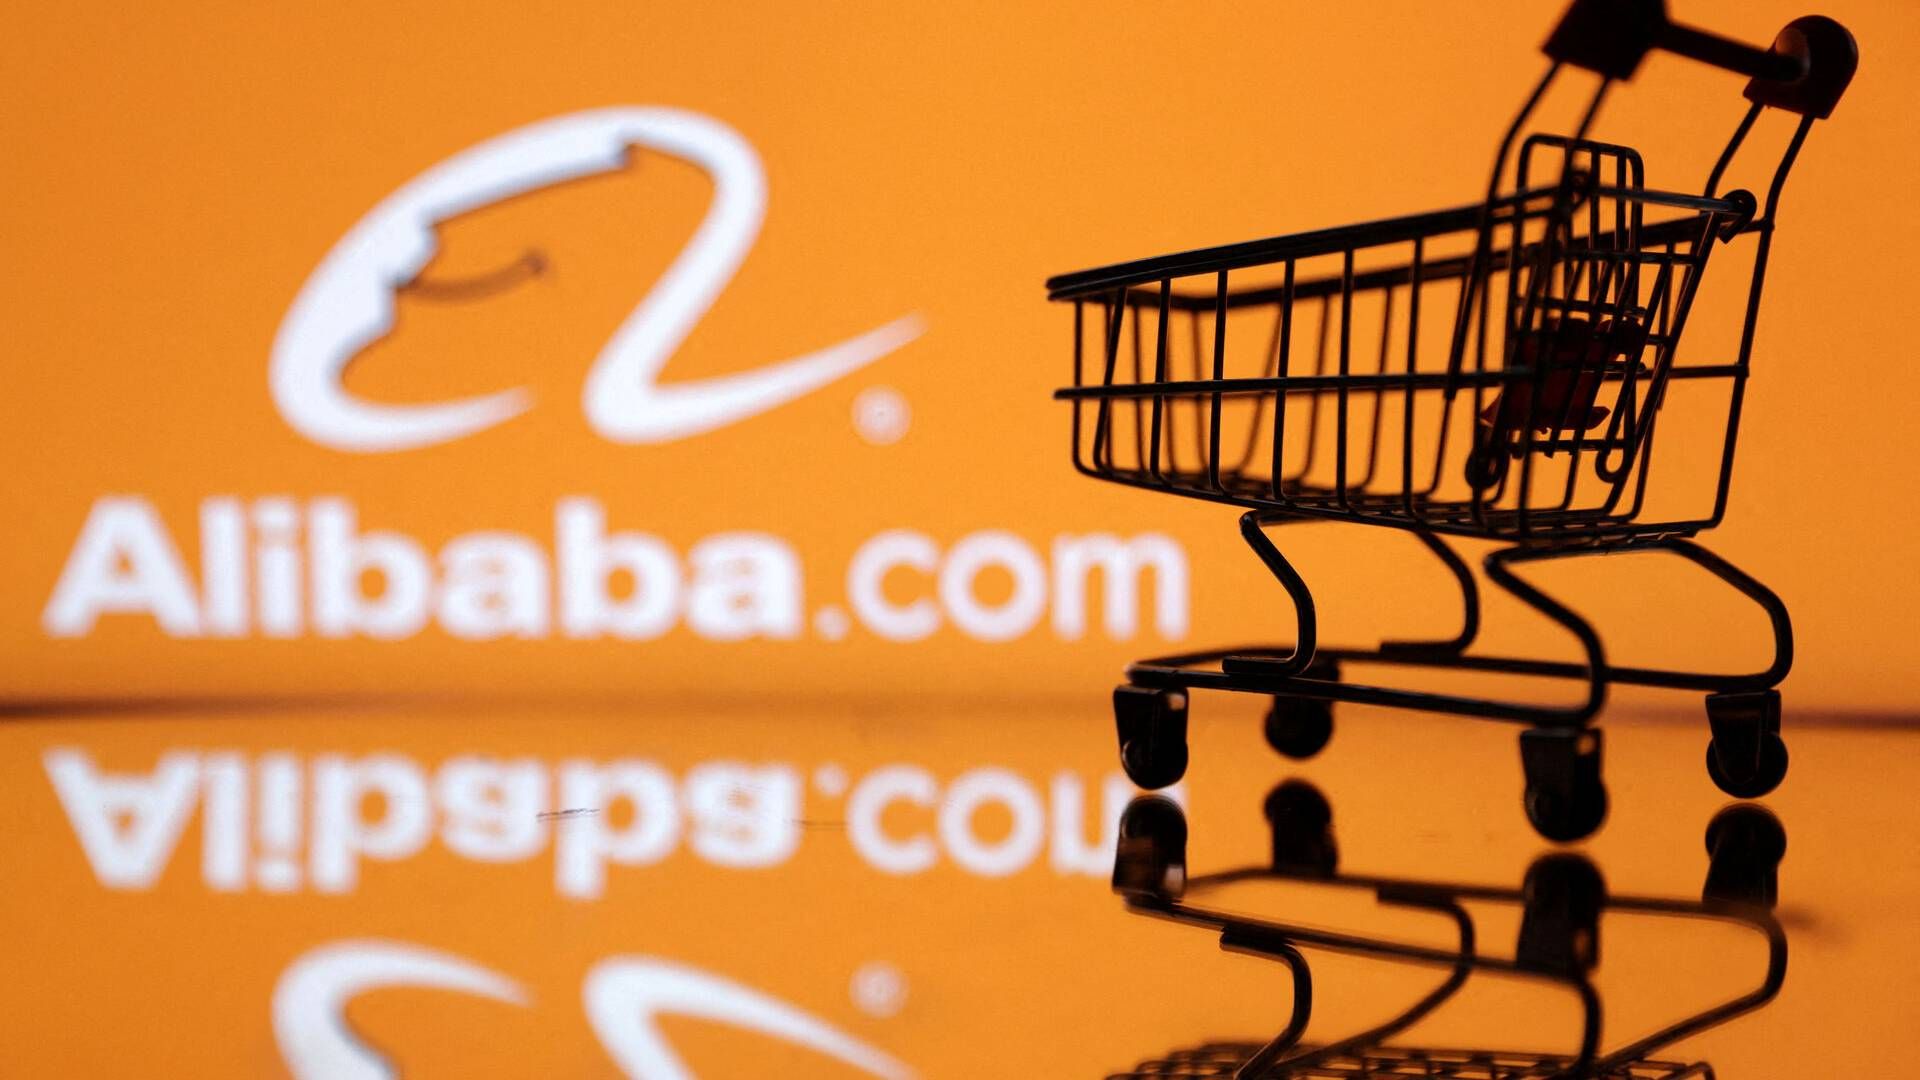 Med de 25 mia. dollar som aktietilbagekøbsprogrammet er øget med i dag, har Alibaba nu 35,3 mia. dollar til at købe egne aktier tilbage for i løbet af de næste tre regnskabsår. | Foto: Dado Ruvic/reuters/ritzau Scanpix